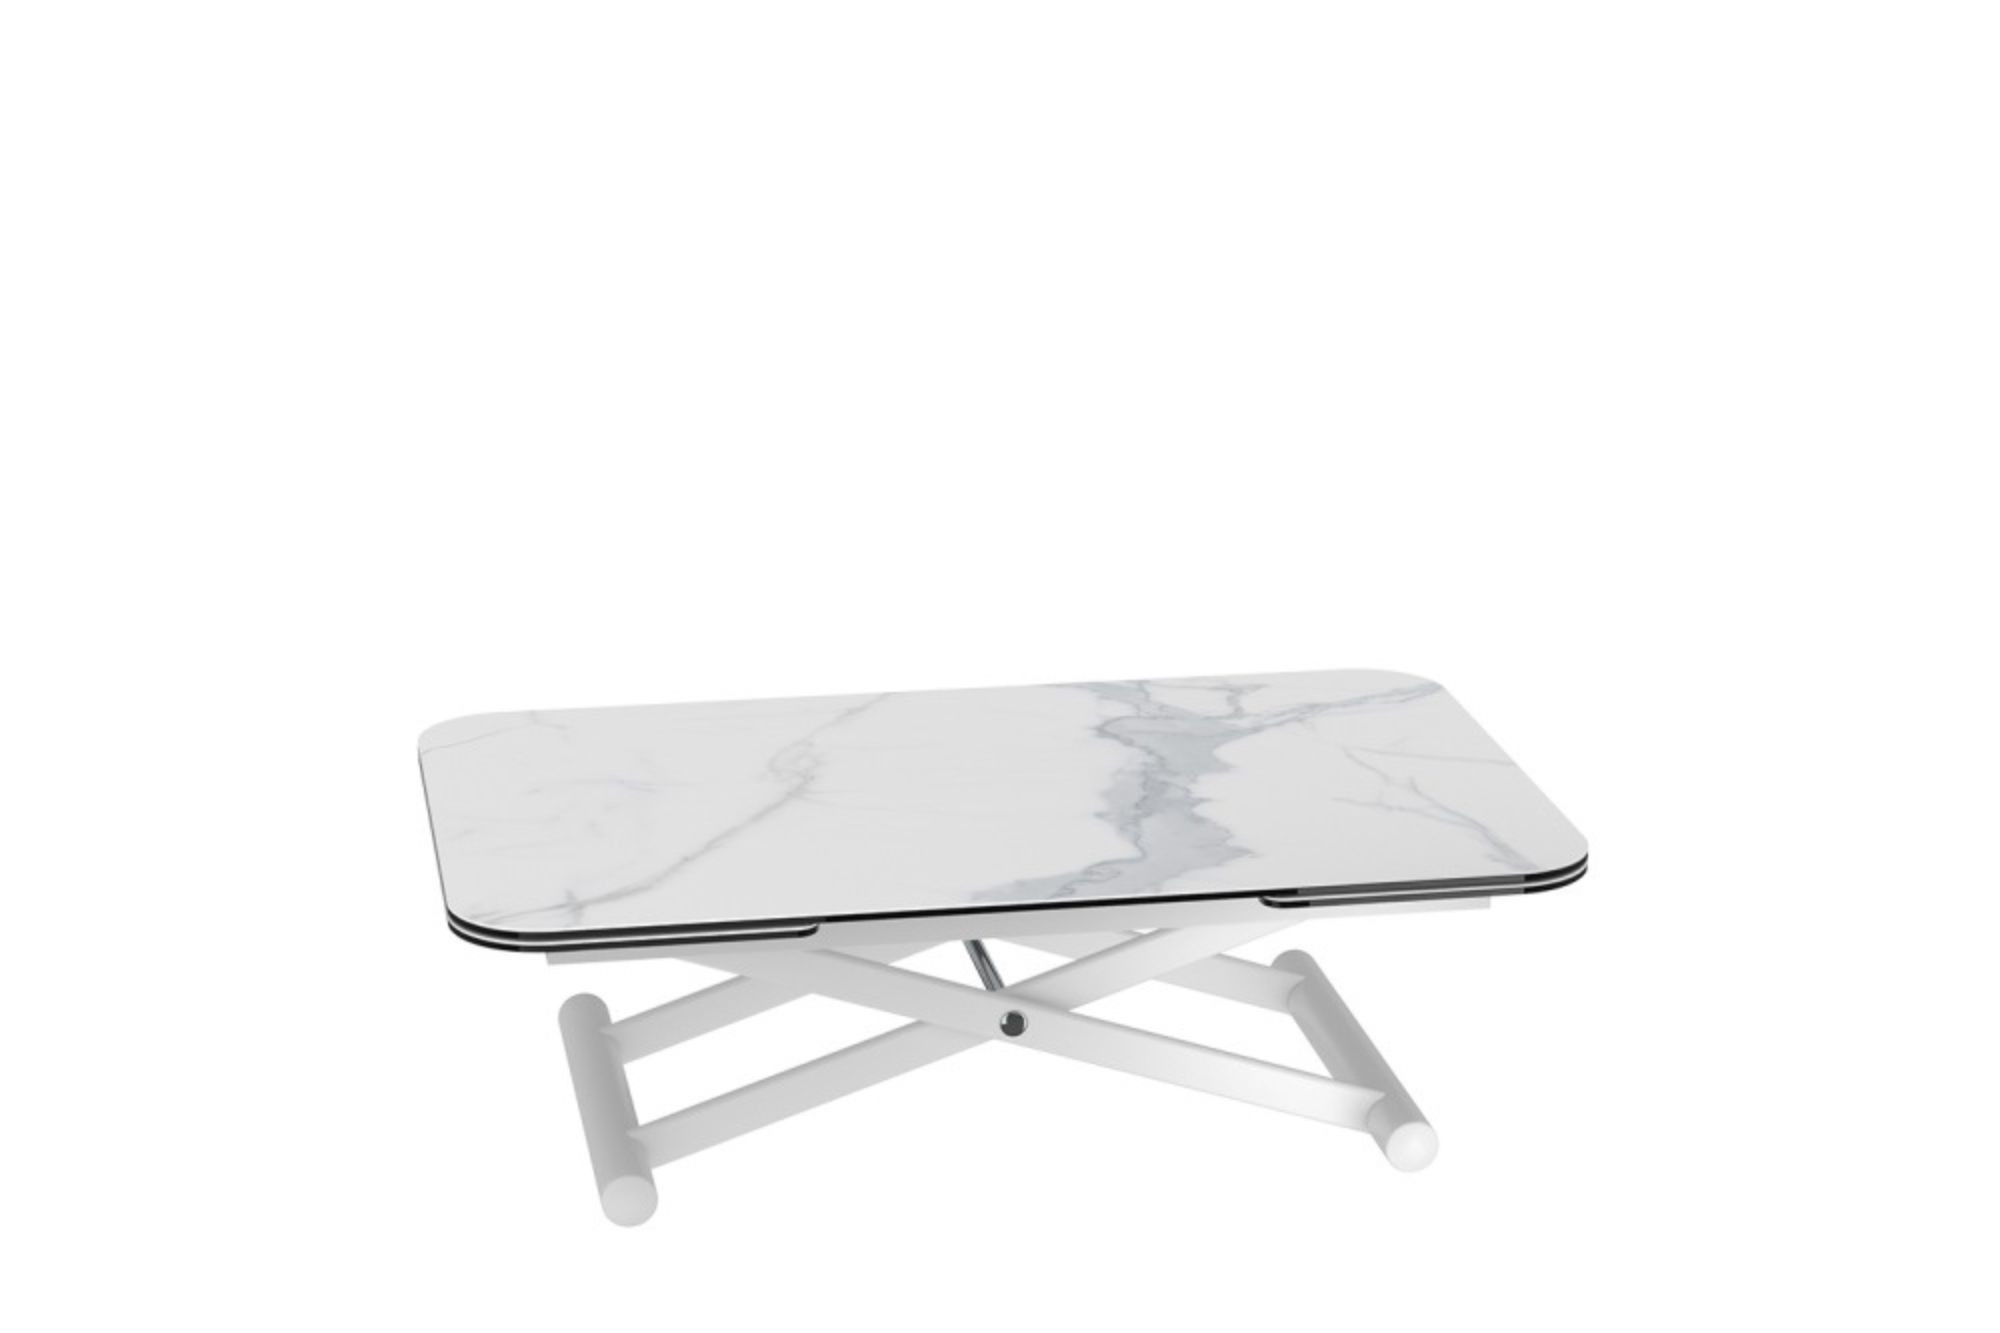 Table basse relevable et extensible L120/190 céramique pied blanc NORA -  HELLIN